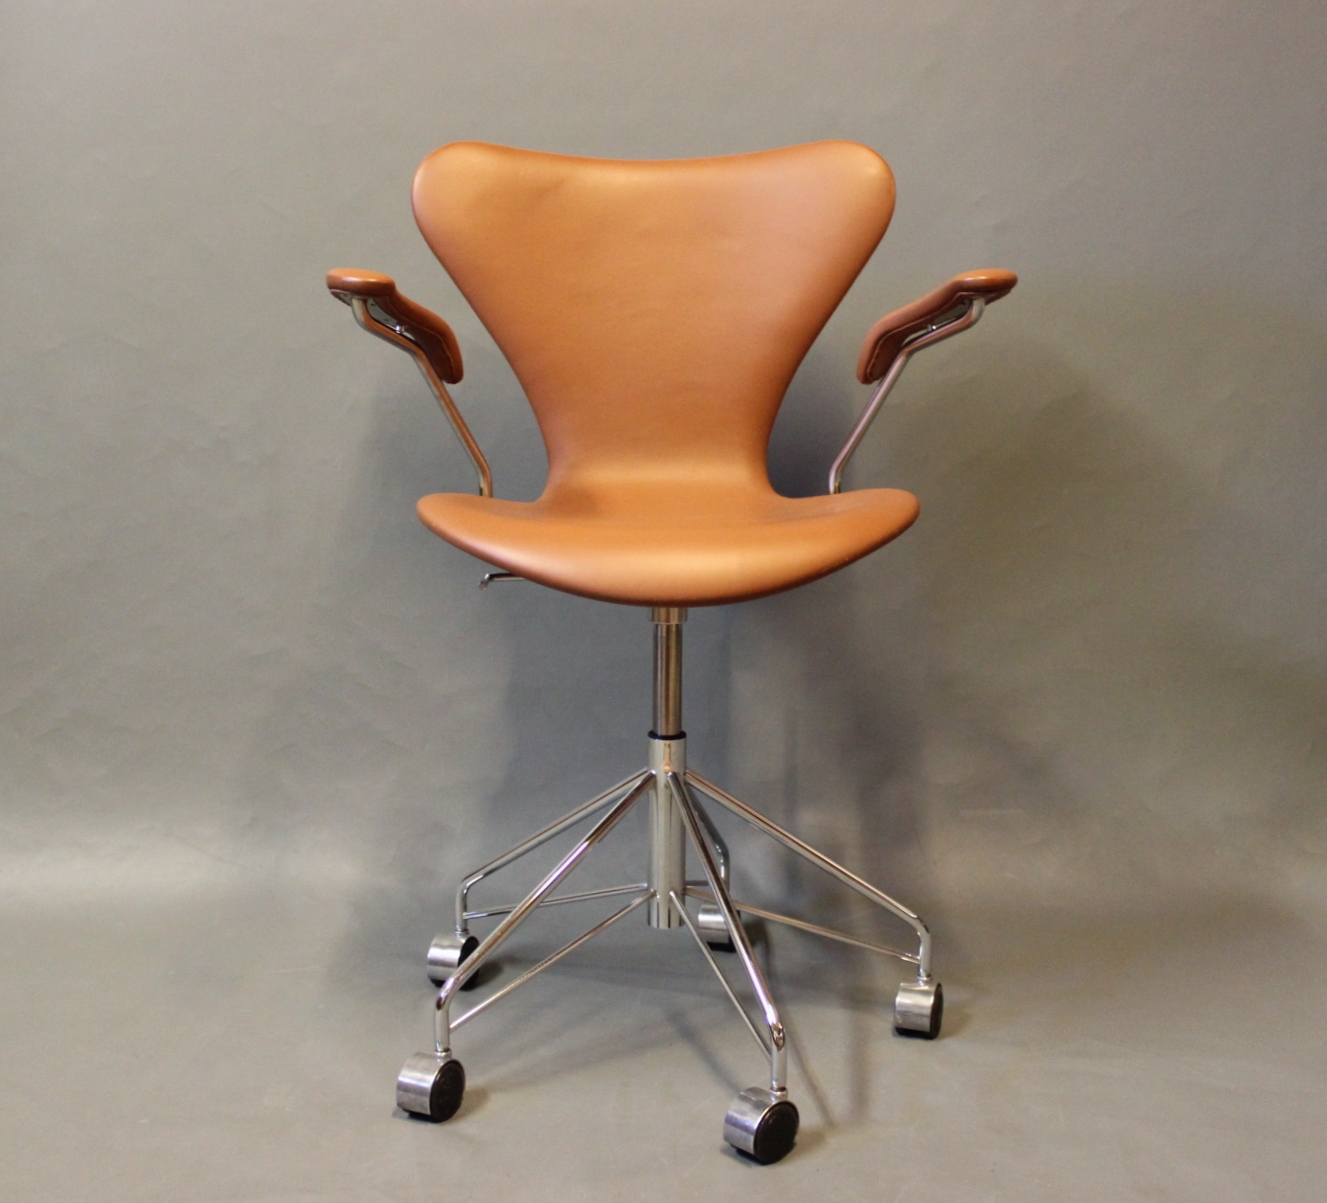 www.Antikvitet.net 7'er kontorstol, model 3217, med og af Arne Jacobsen og Fritz Hansen. 5000m2